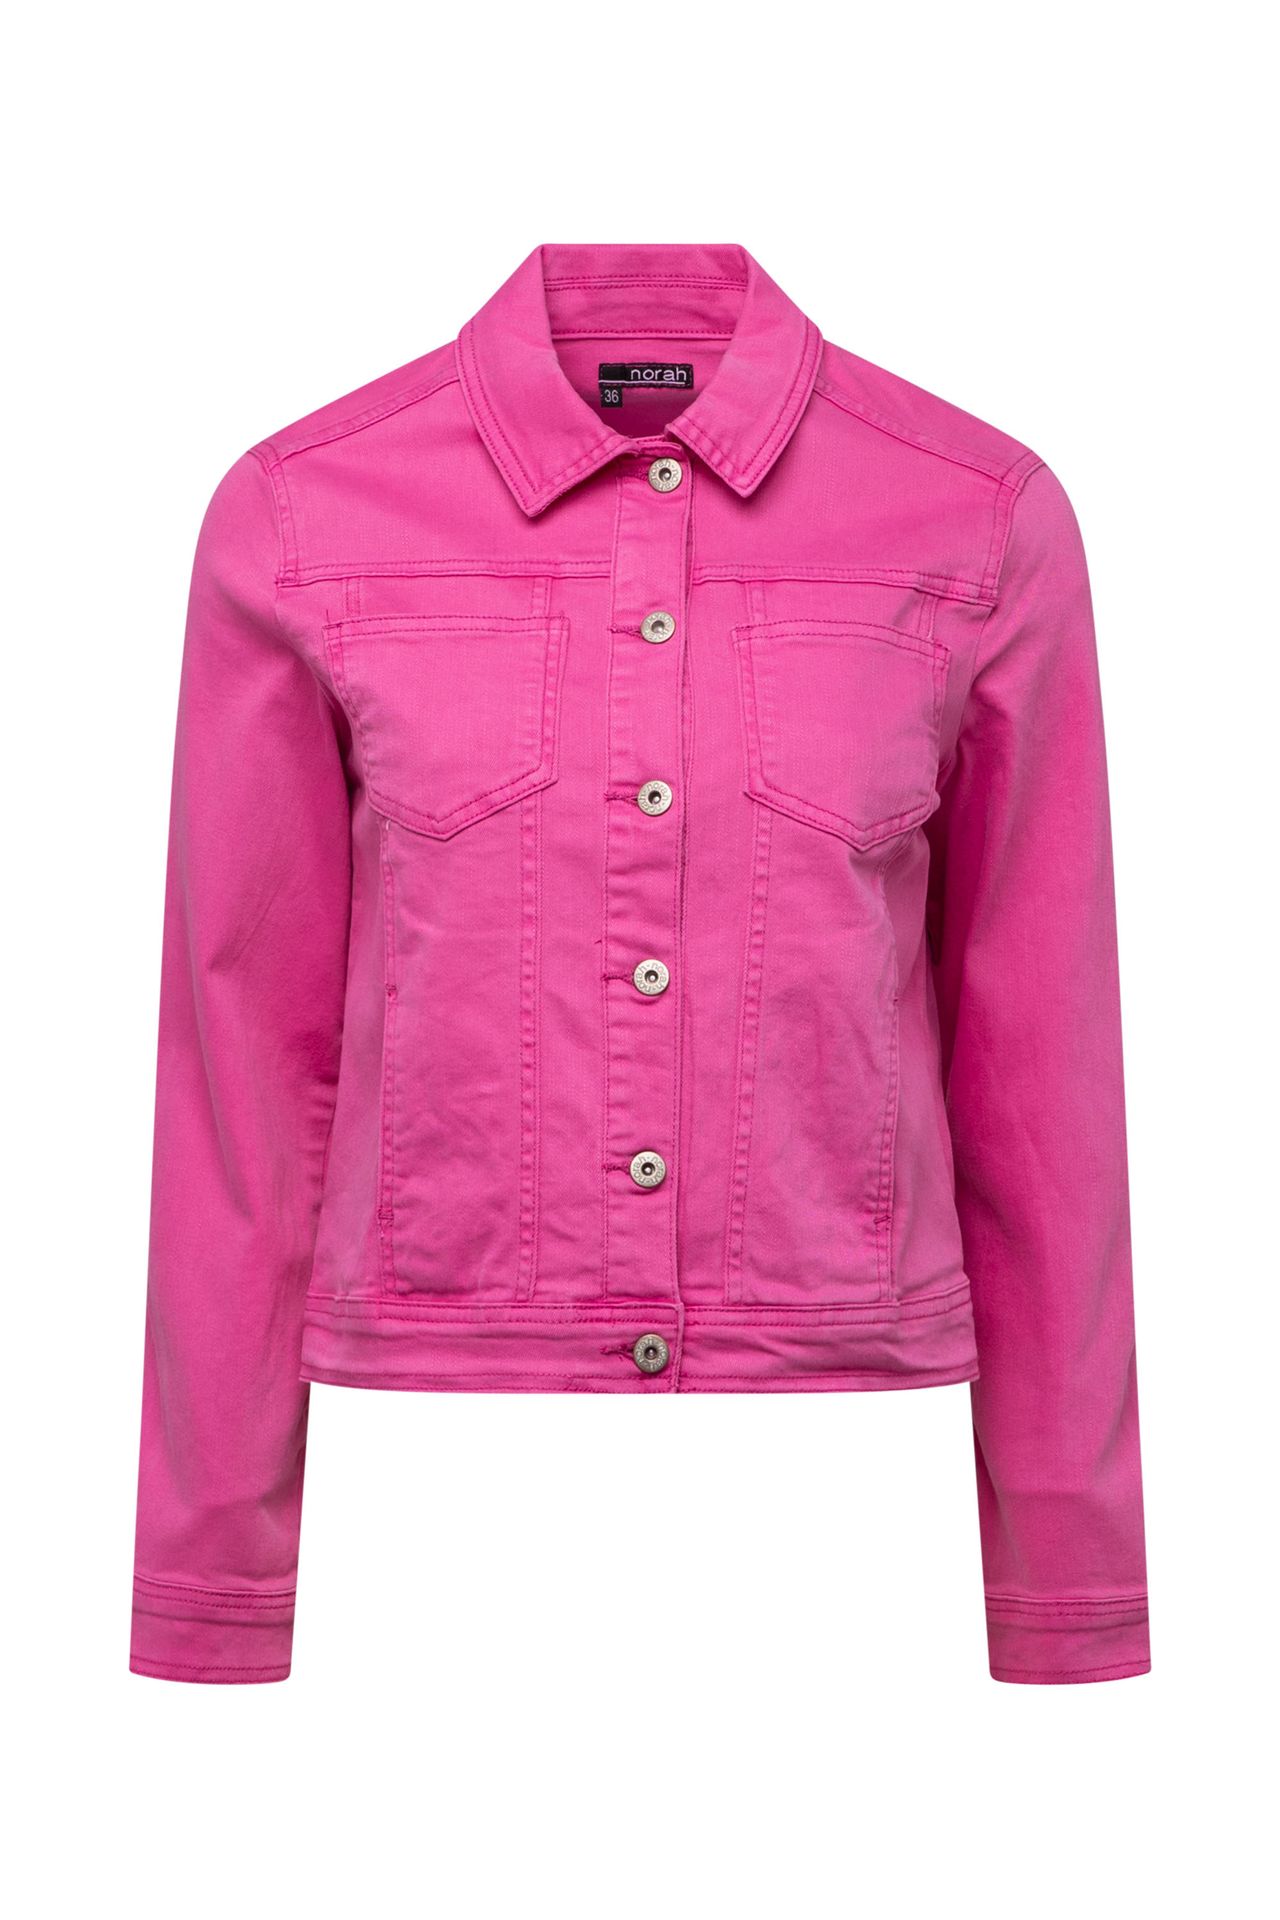 Norah Roze spijkerjacket van katoenmix pink 212557-900